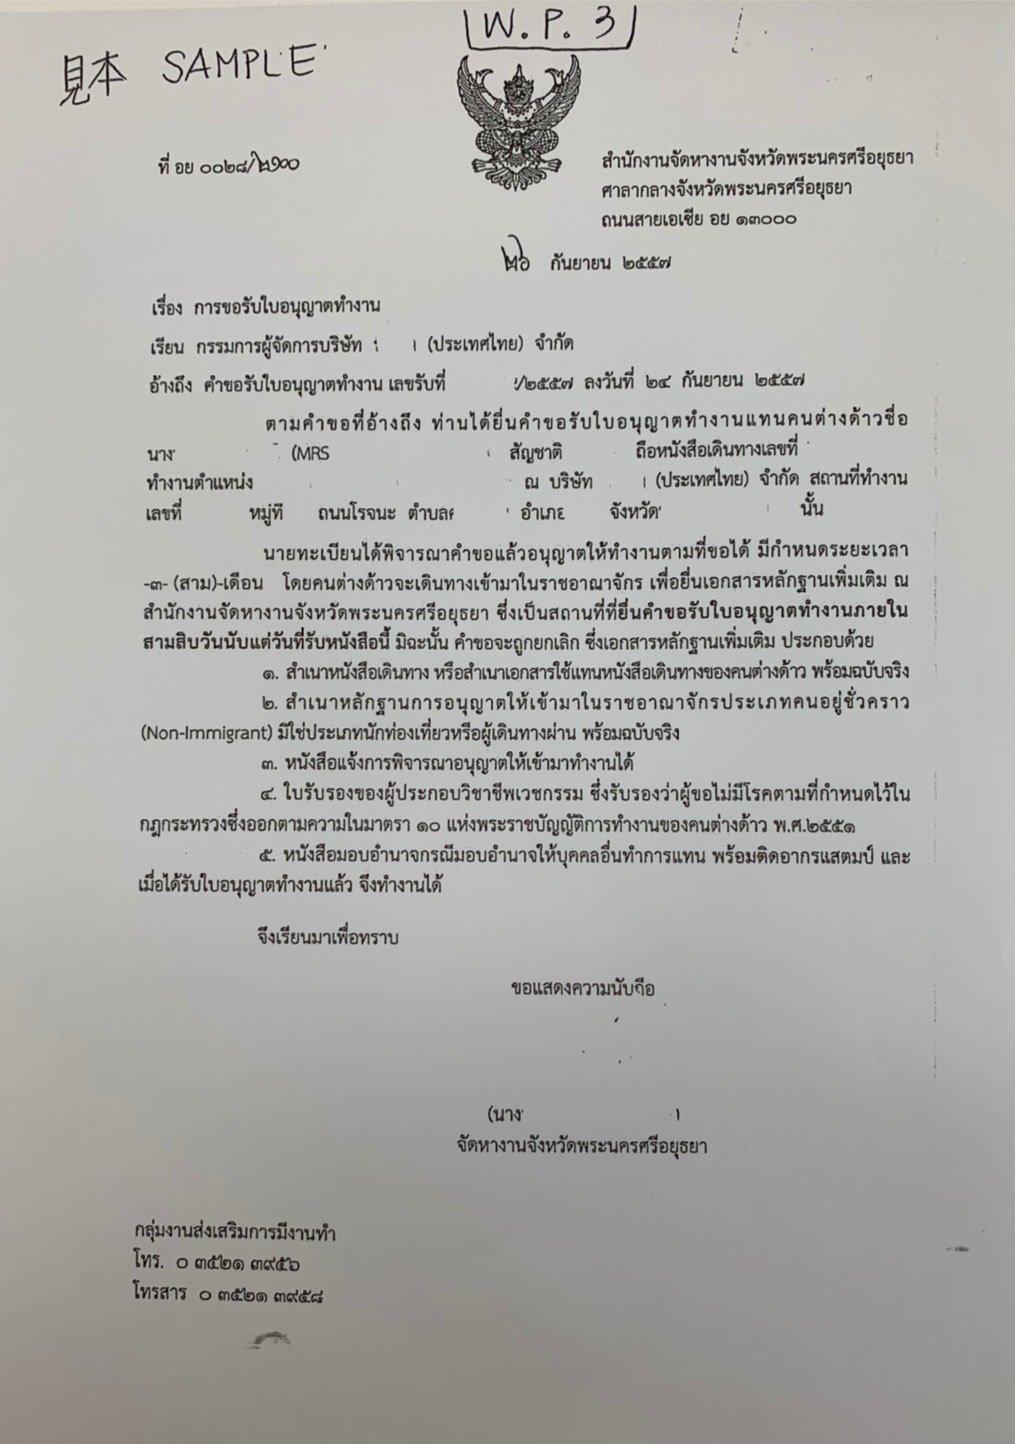 タイの就労ビザ取得用WP3（労働許可証）の申請